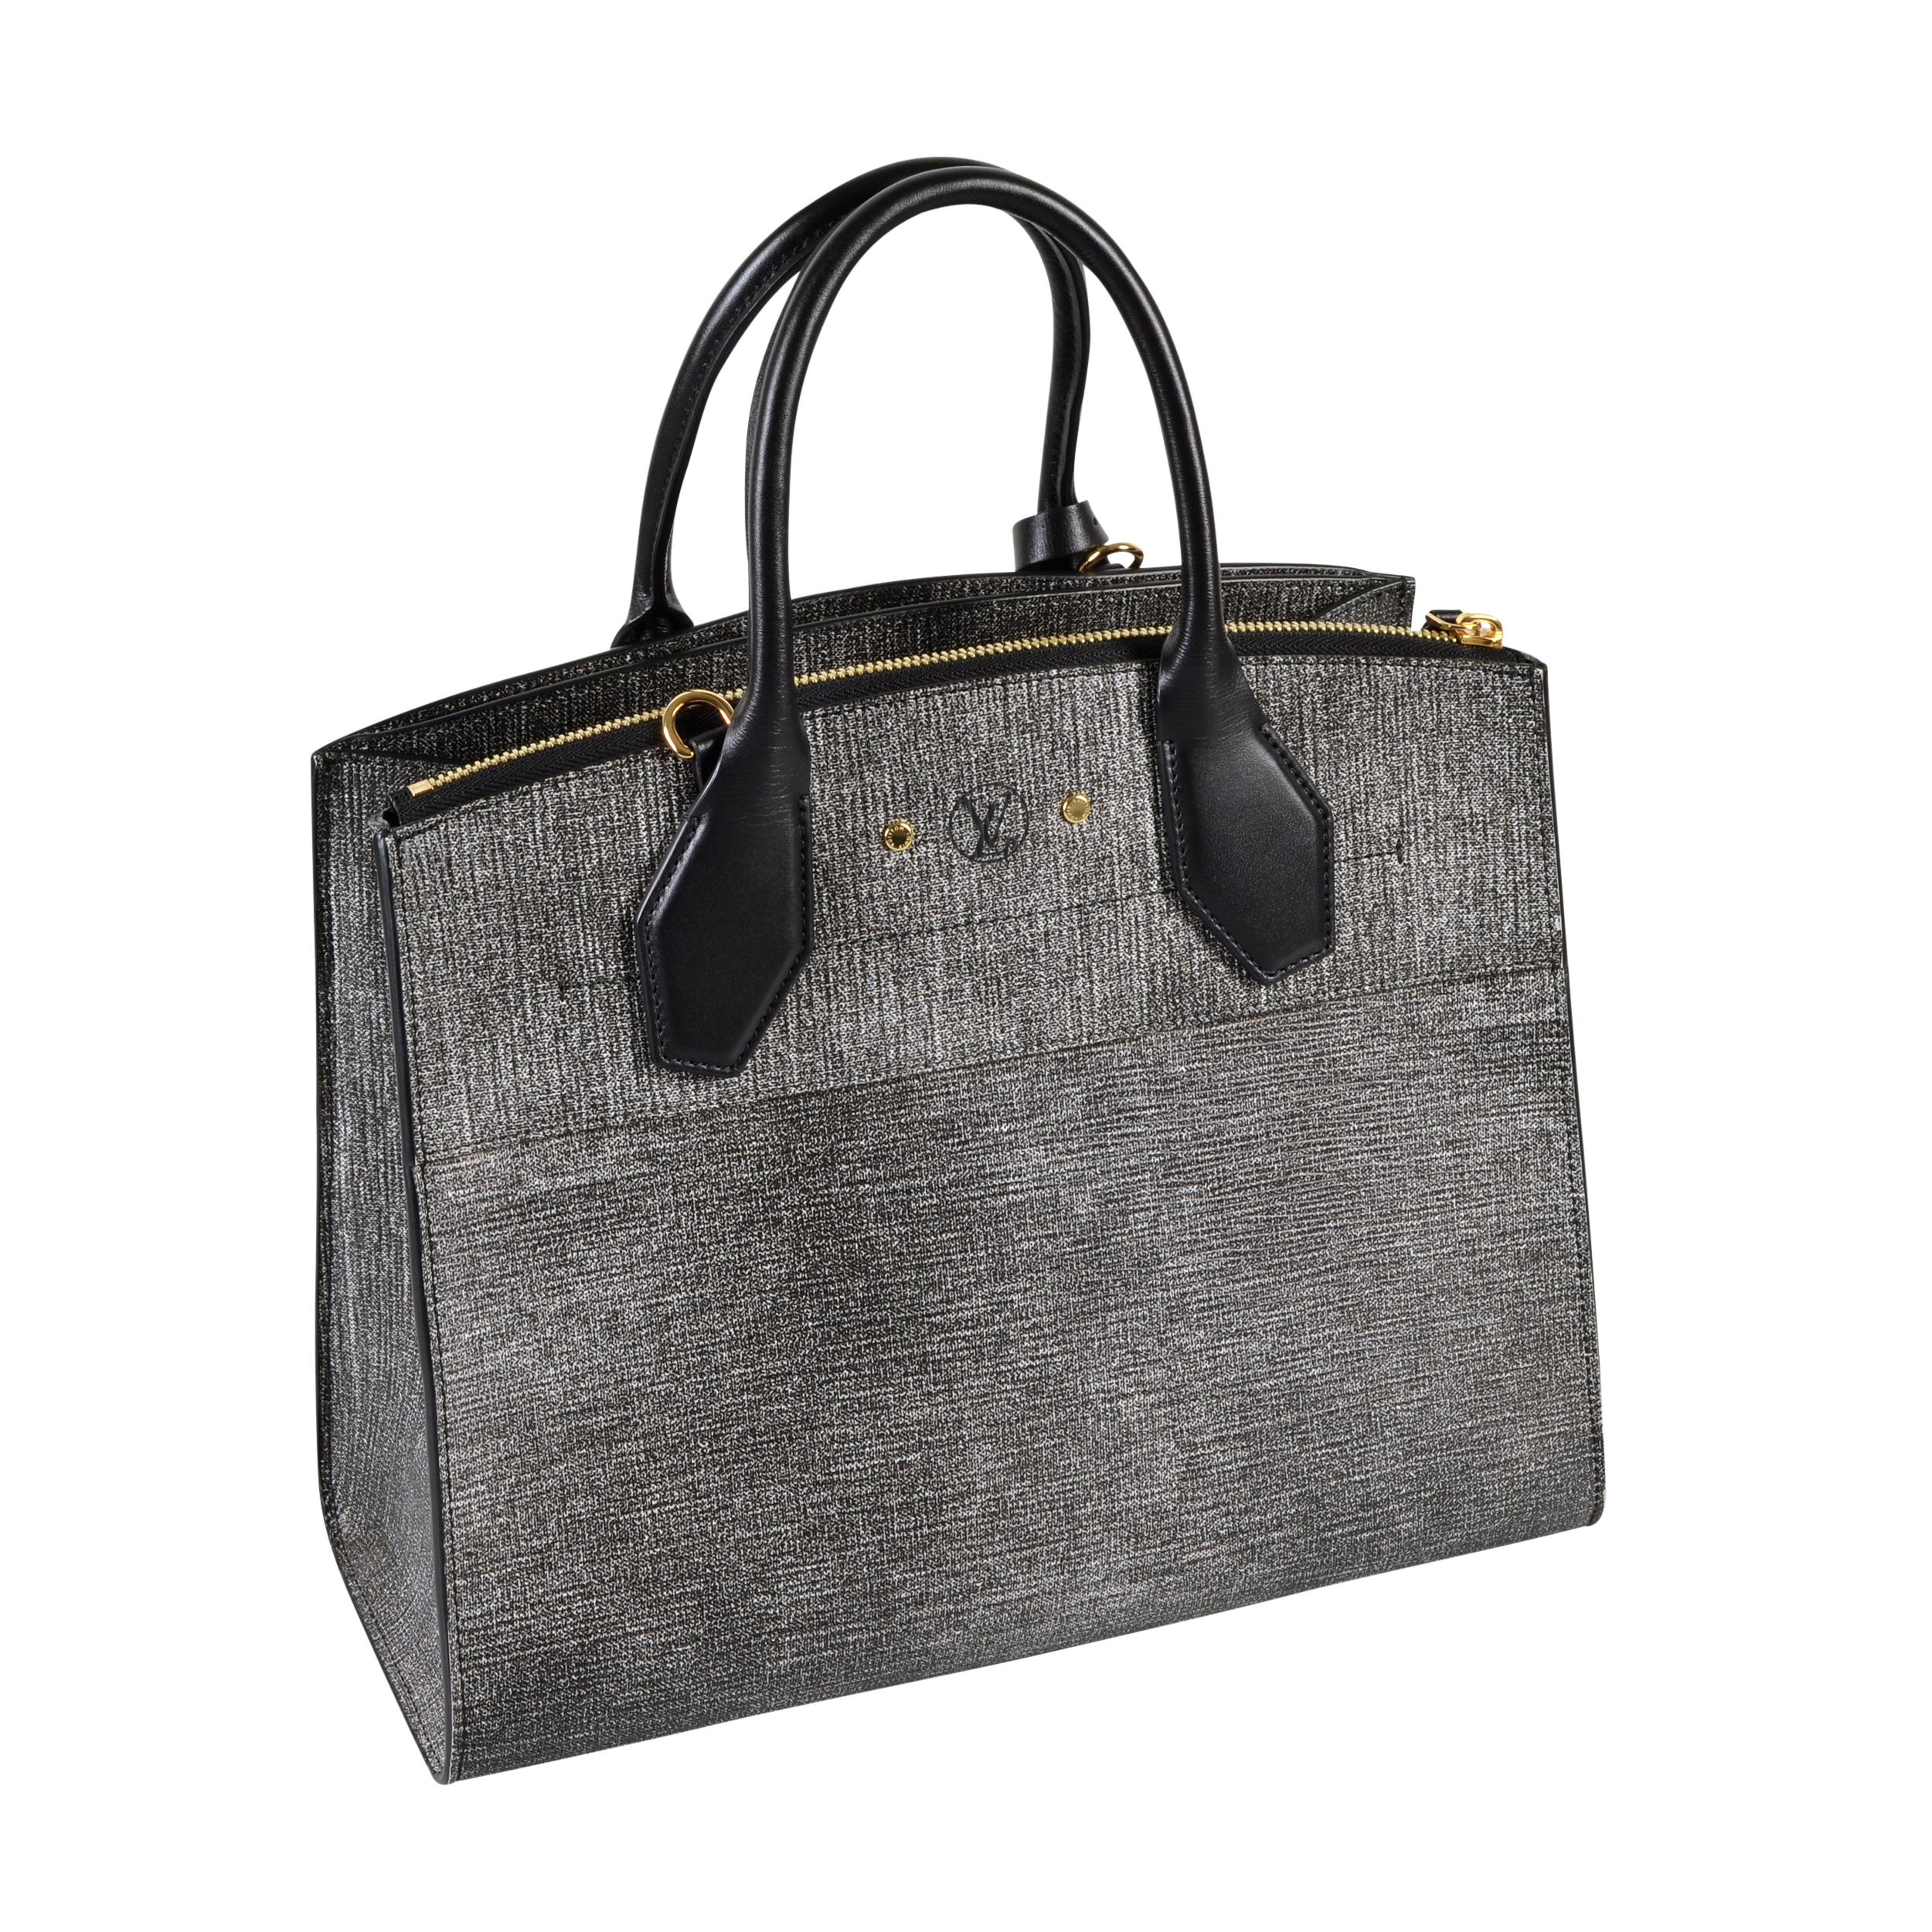 Louis Vuitton Handtaschen aus Leder - Schwarz - 37509388